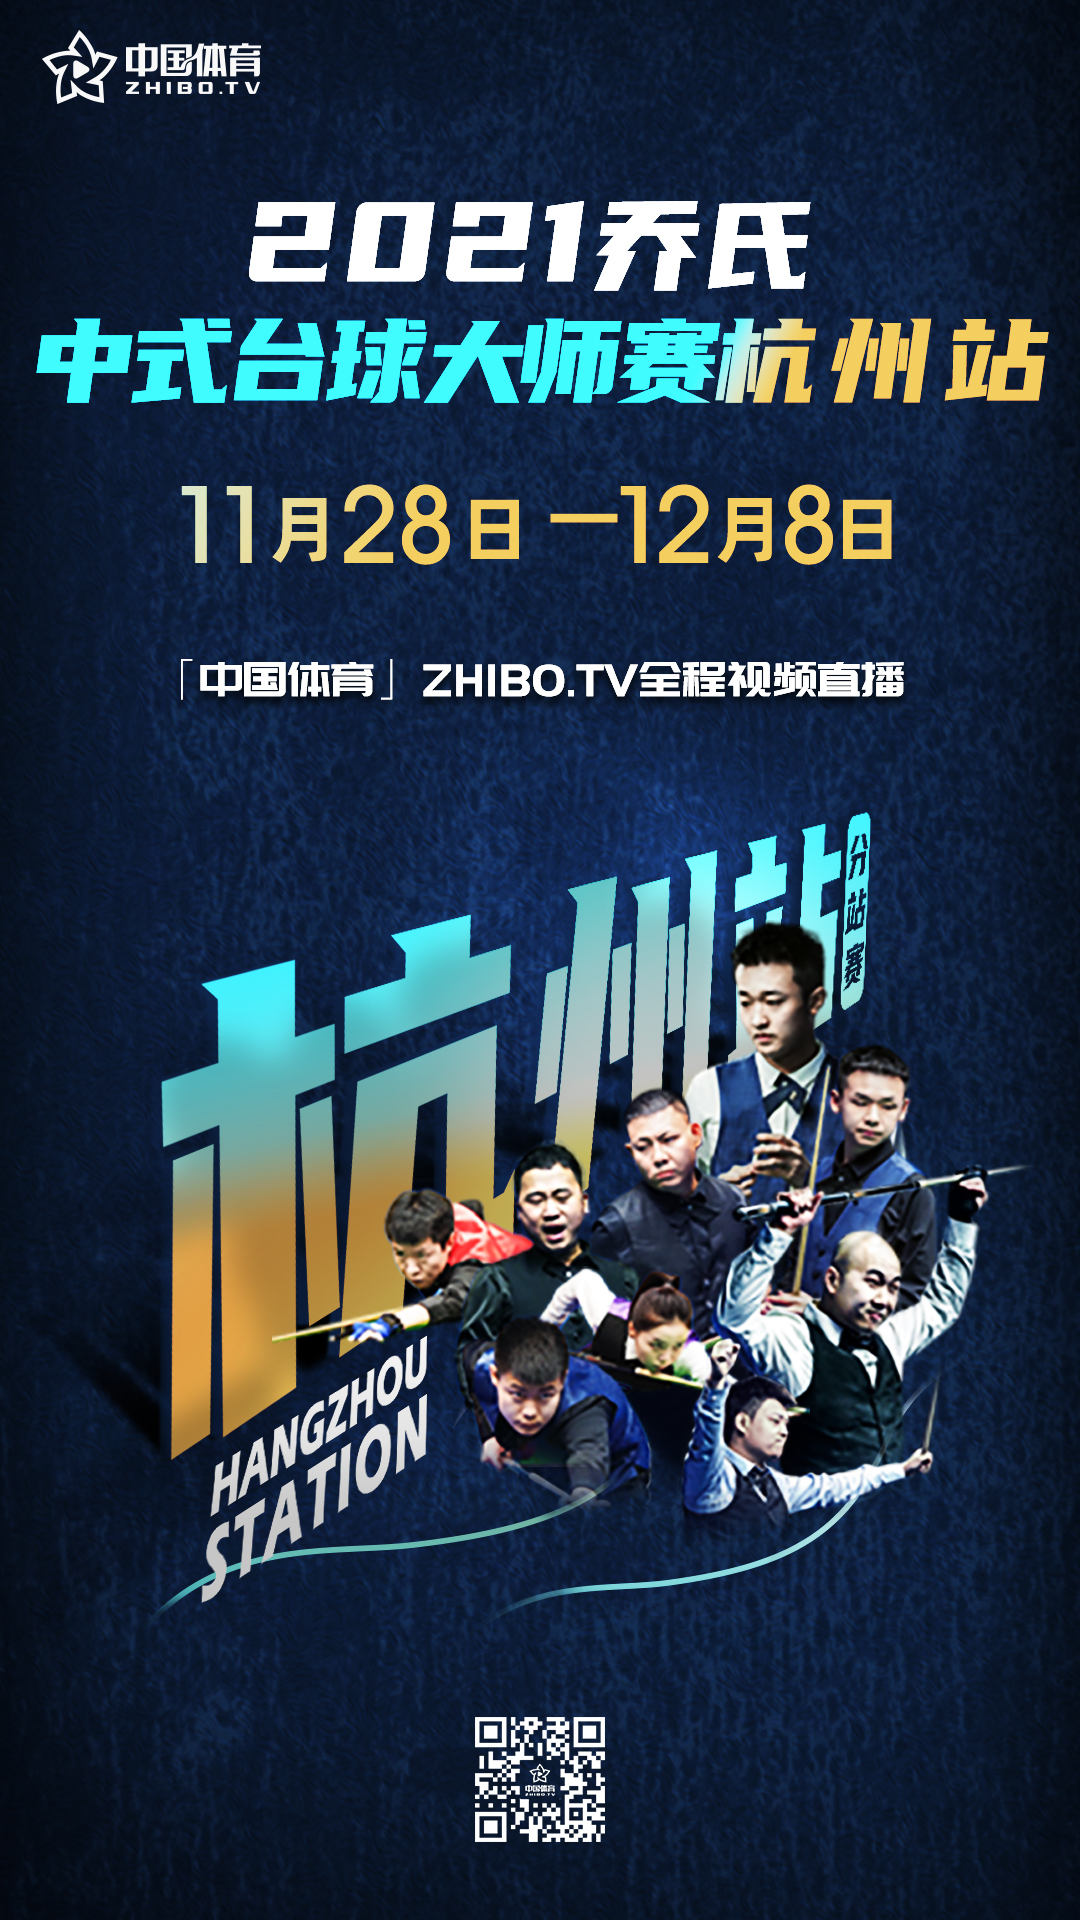 乔氏大师赛杭州站11月29日开打 各路顶尖选手展开大战